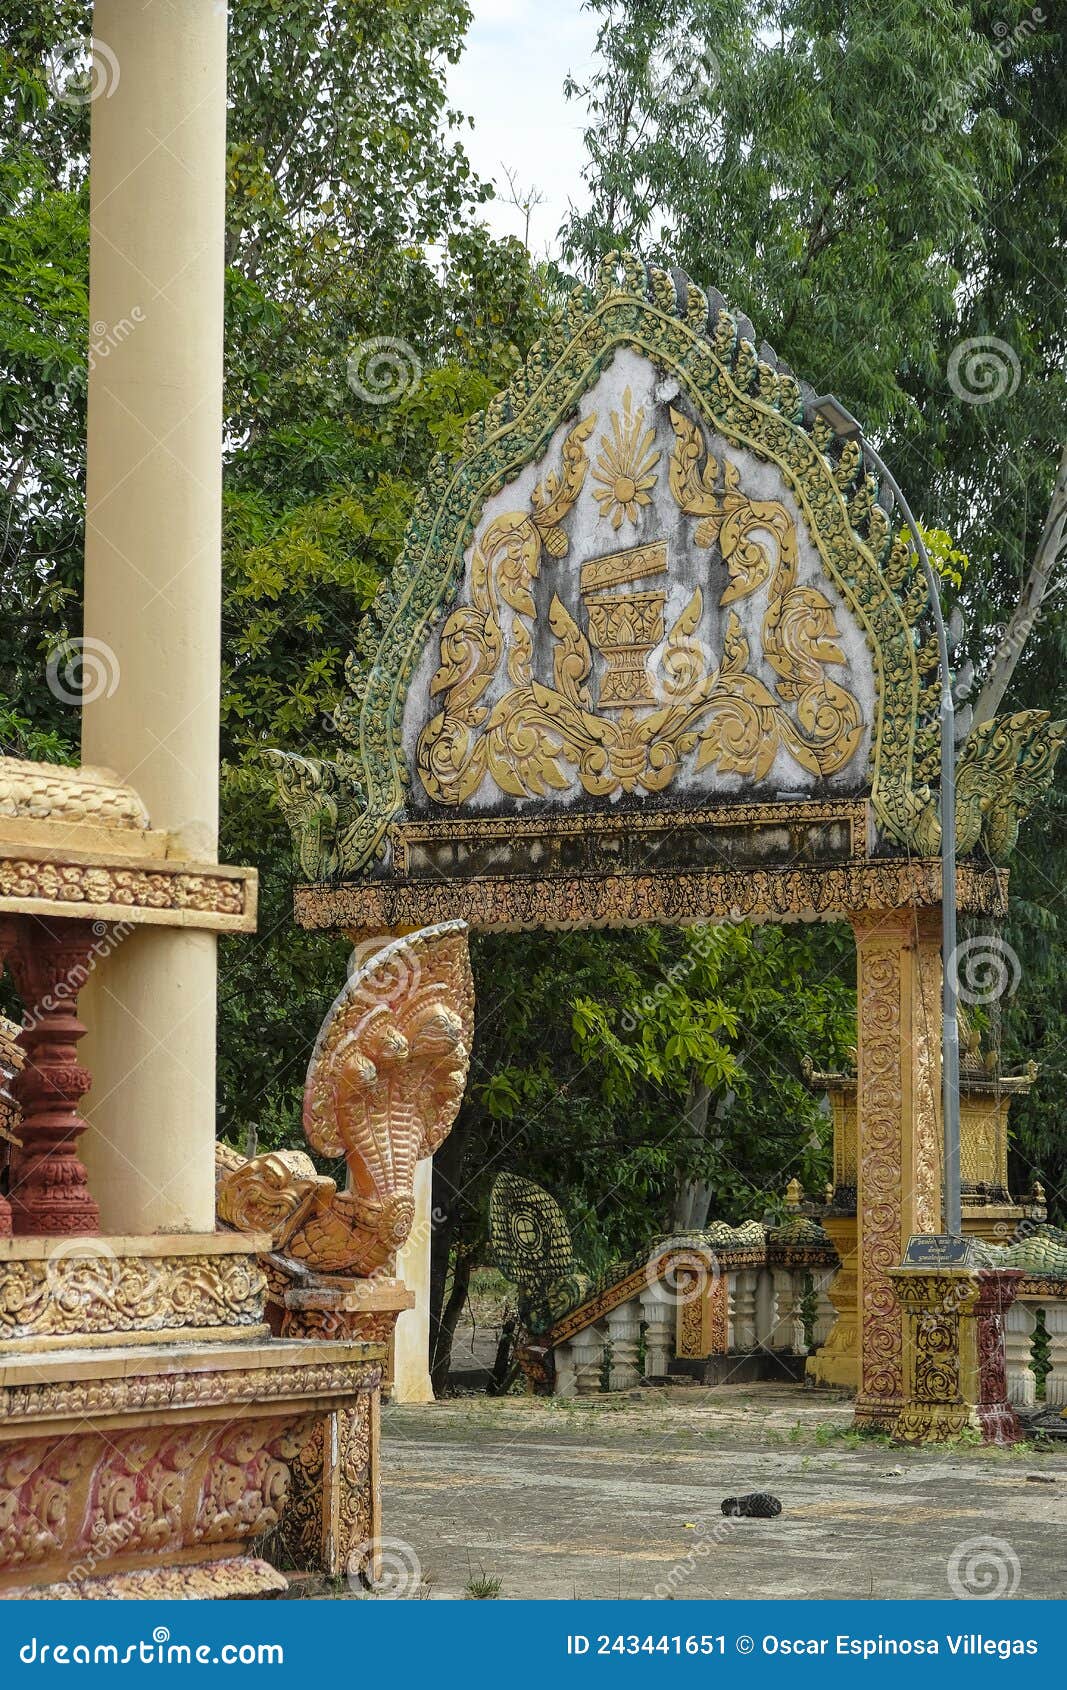 toek vil pagoda in kampot, cambodia